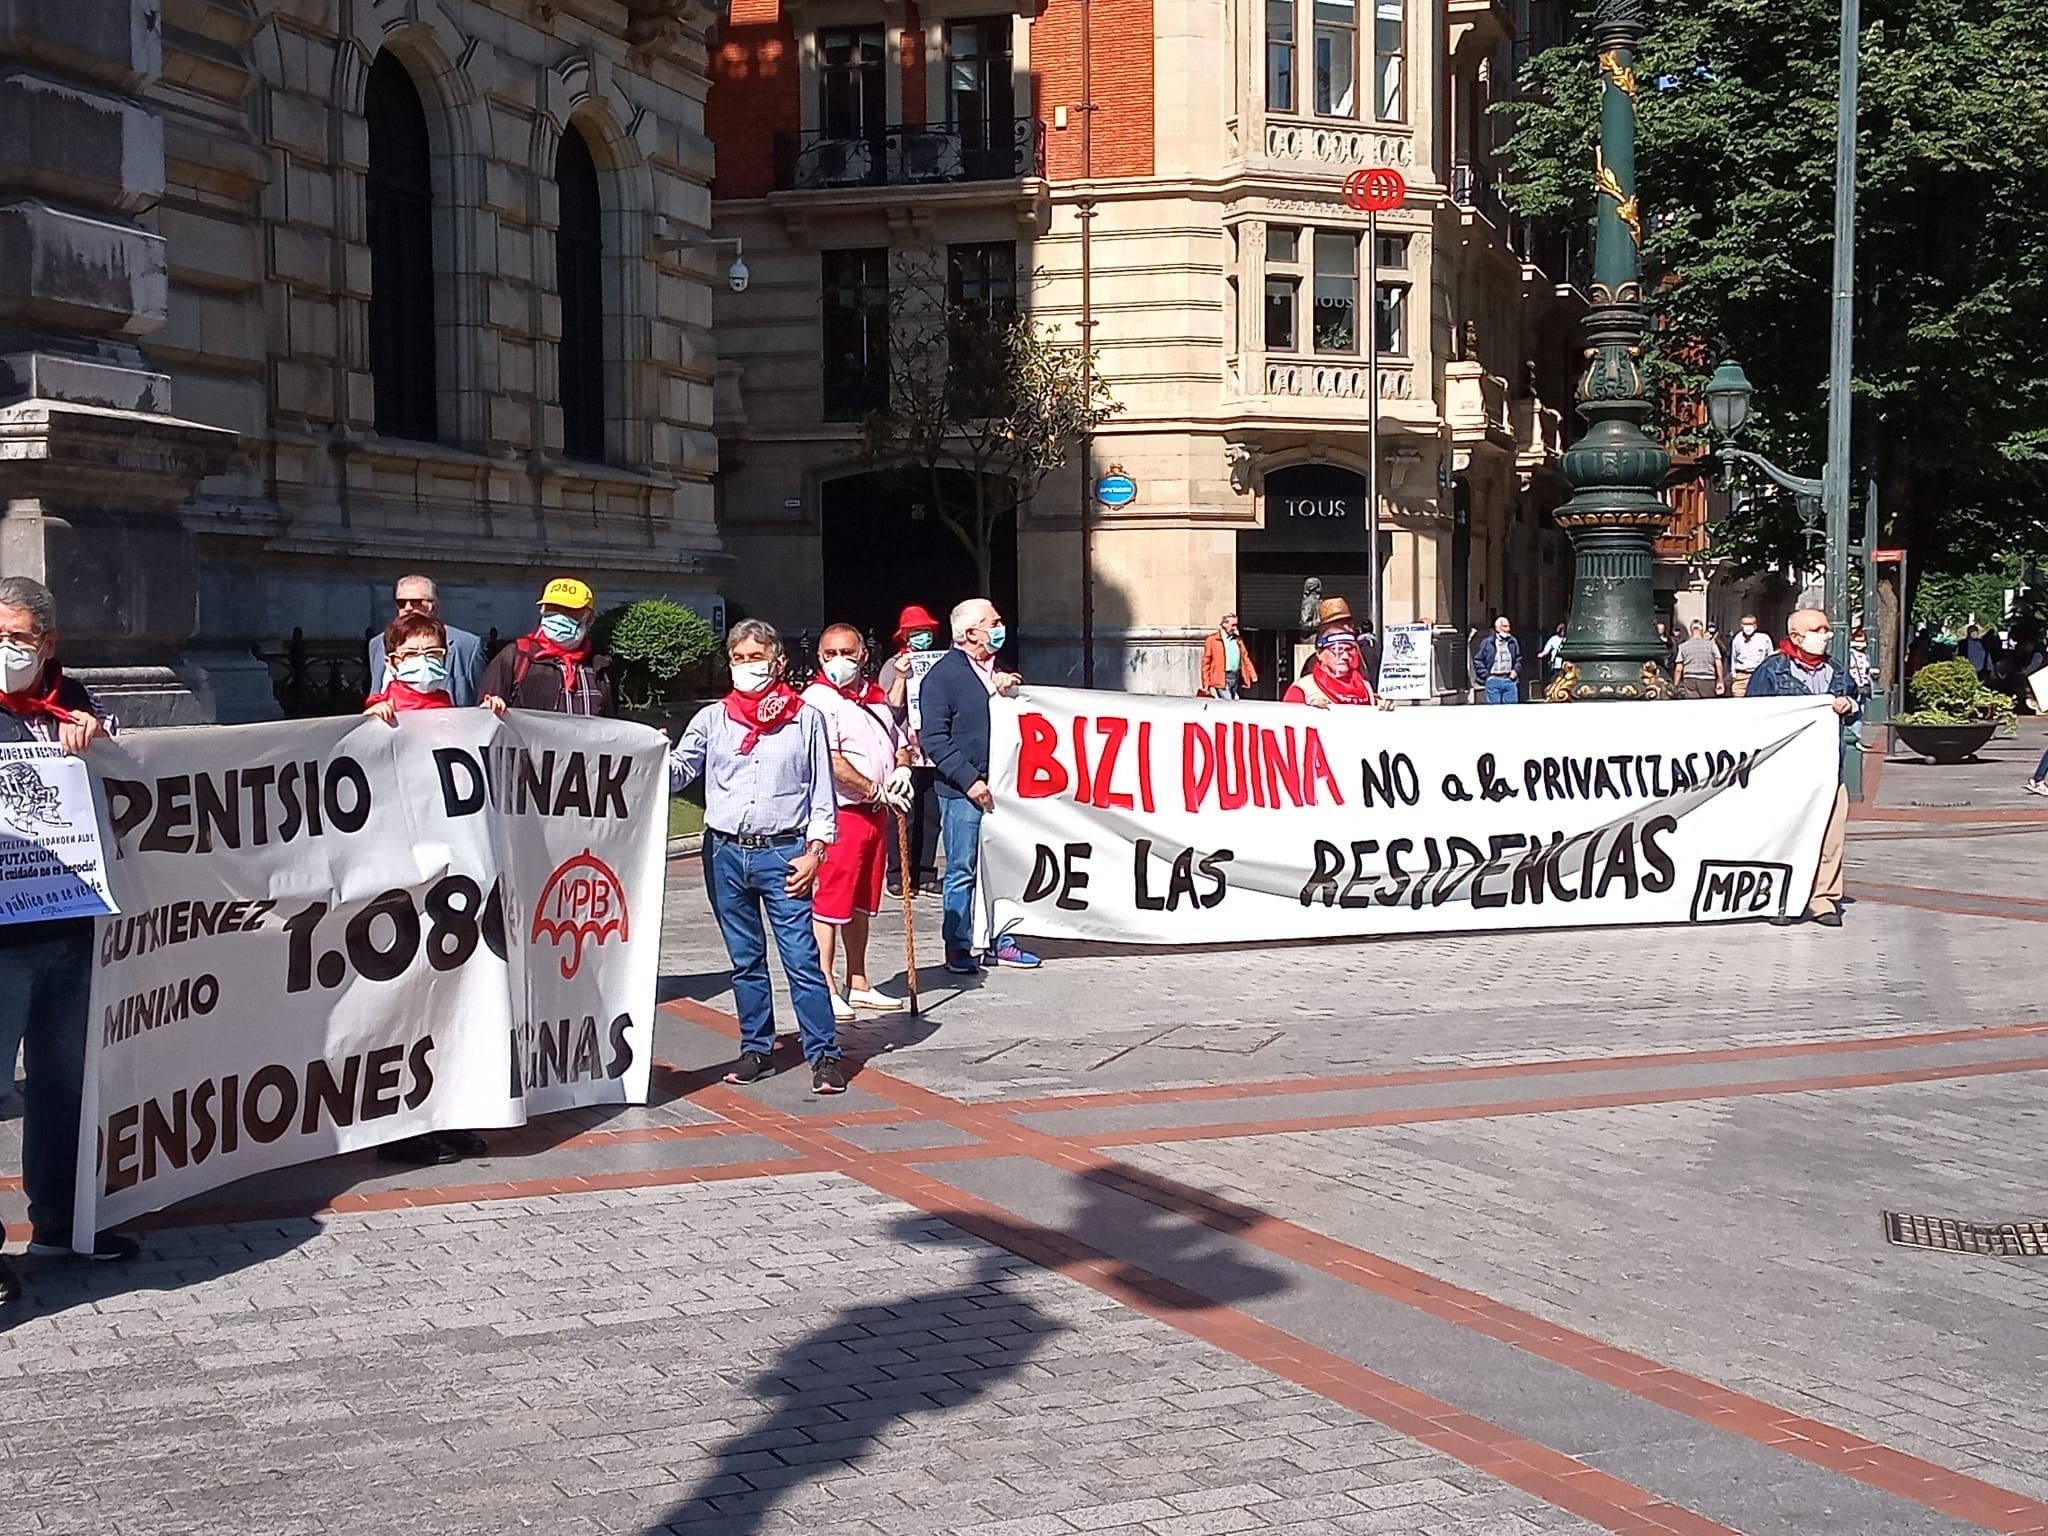 Los pensionistas salen a la calle en Bilbao para protestar por la gestión de las residencias